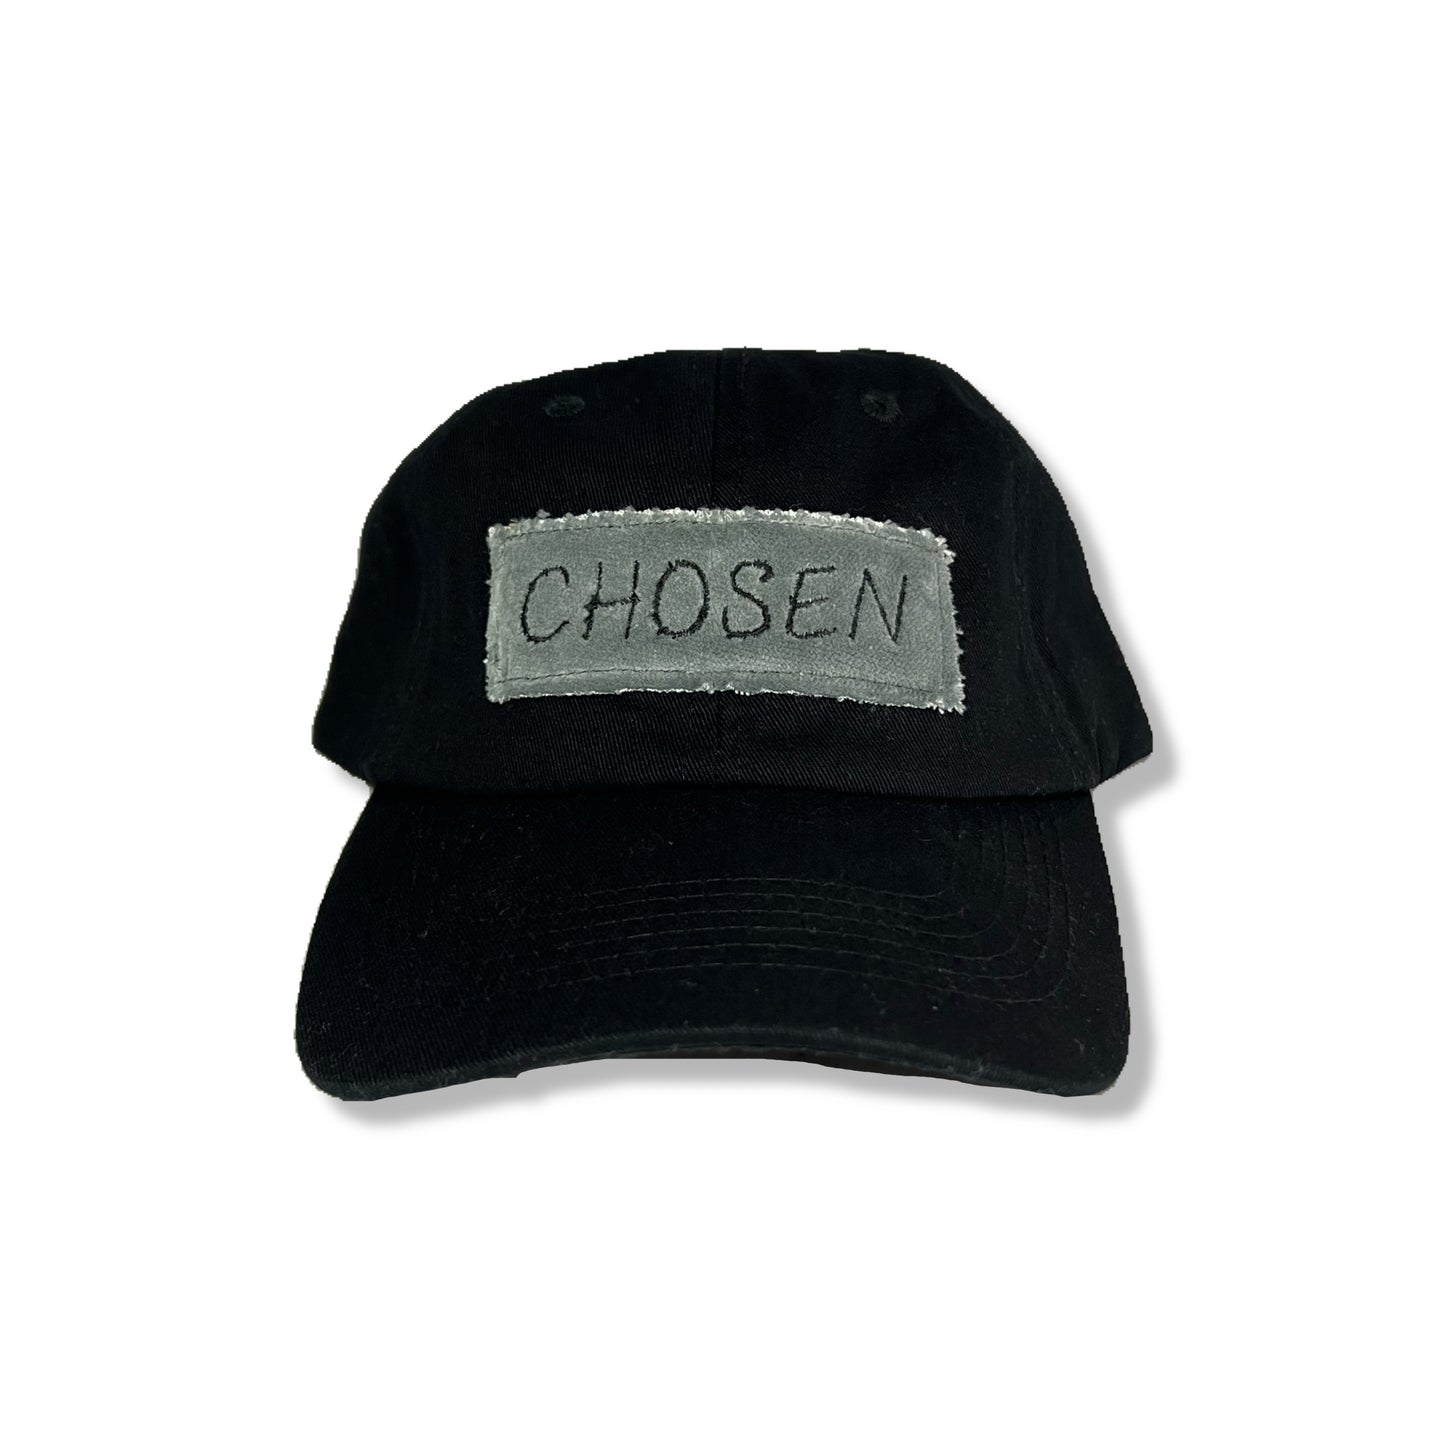 “Midnight Gravel” Chosen Hat